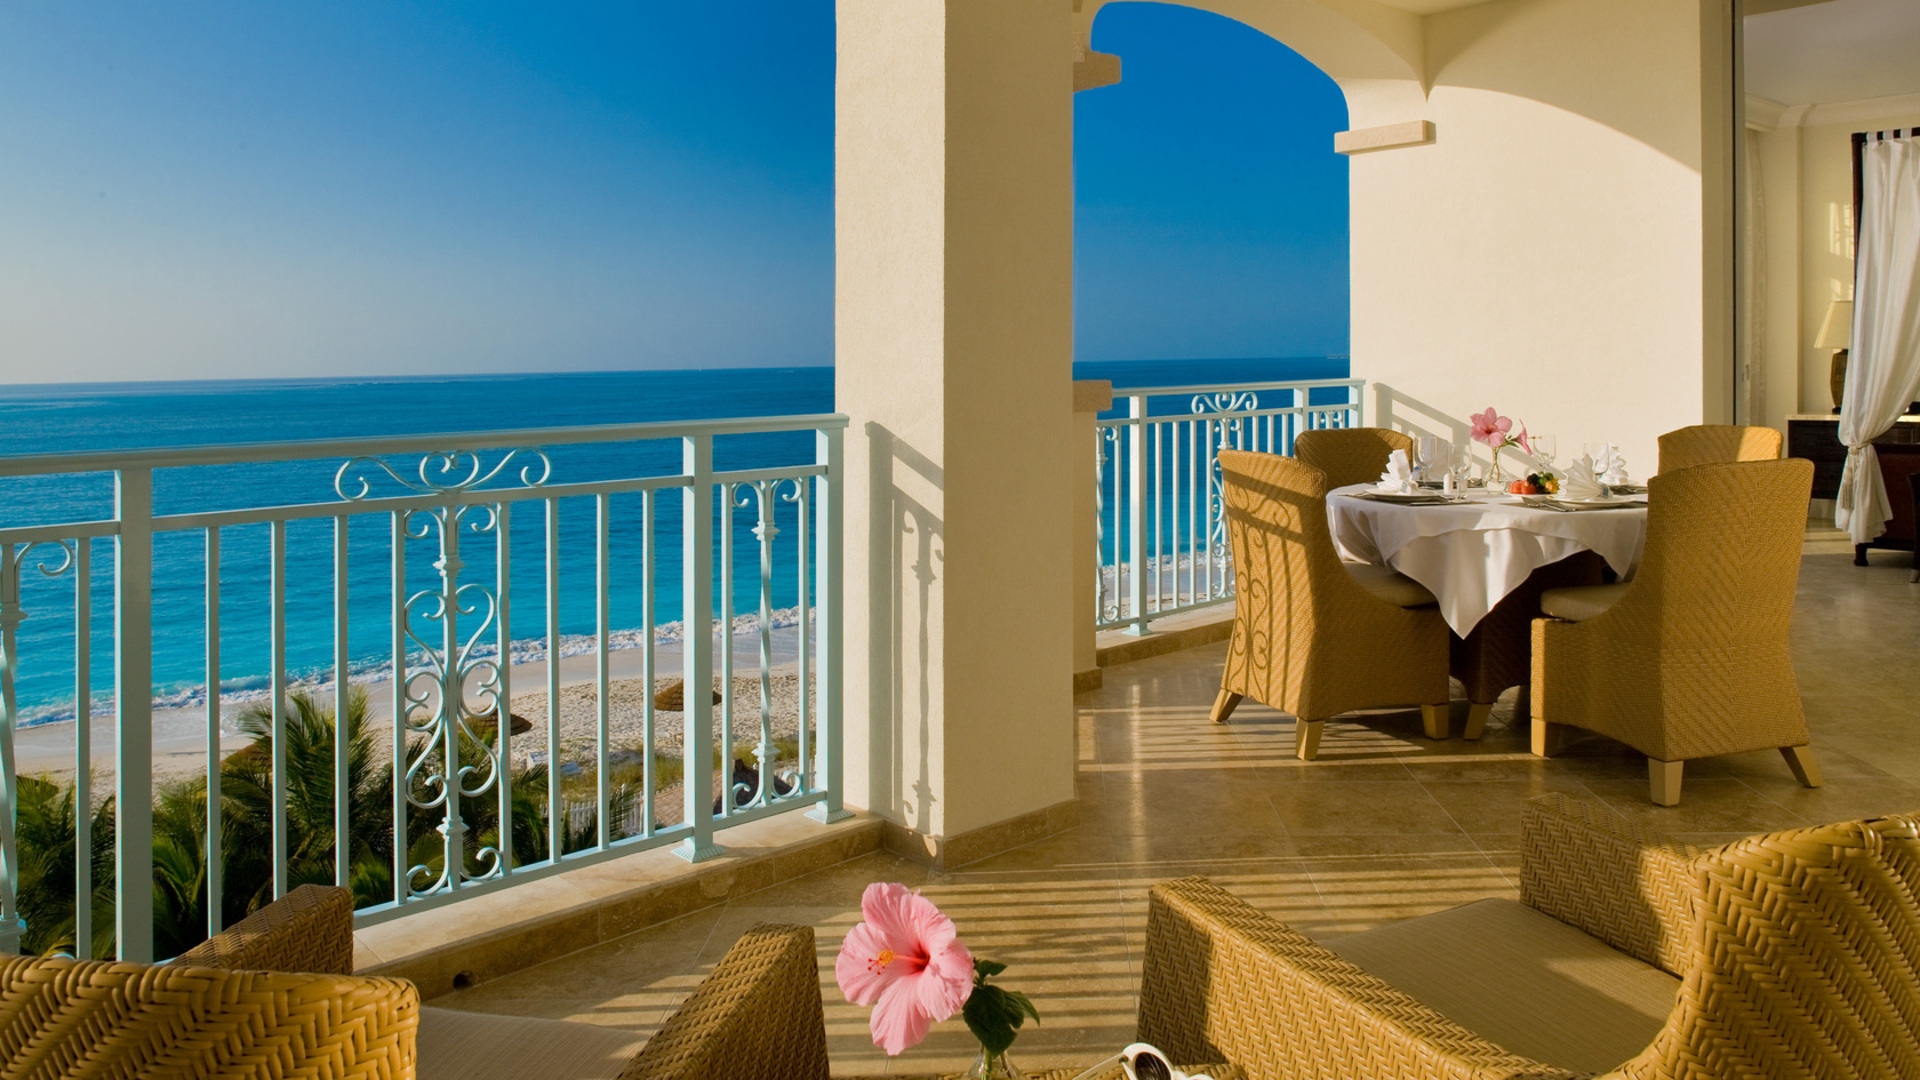 Sea Beach Terrace Balcony Horizon Leisure Stock Photos